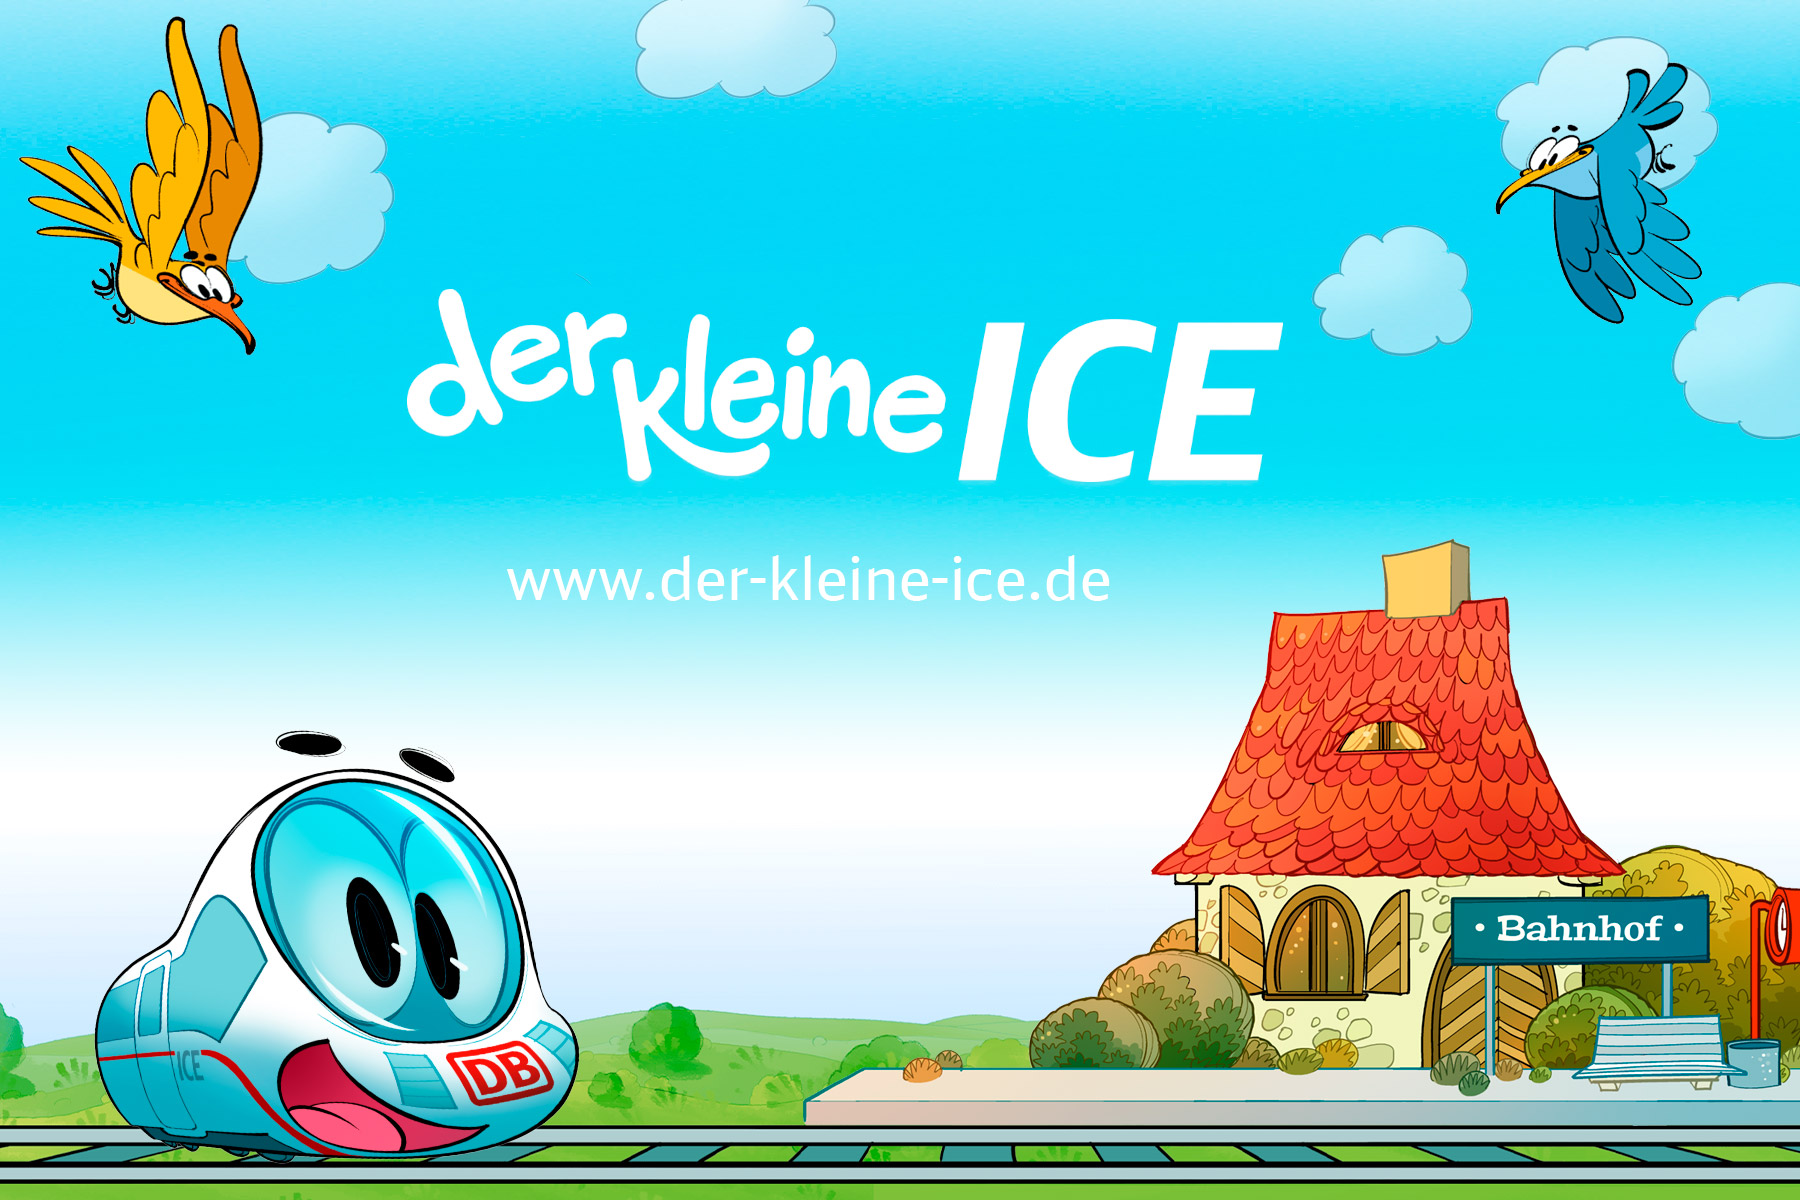 www.der-kleine-ice.de